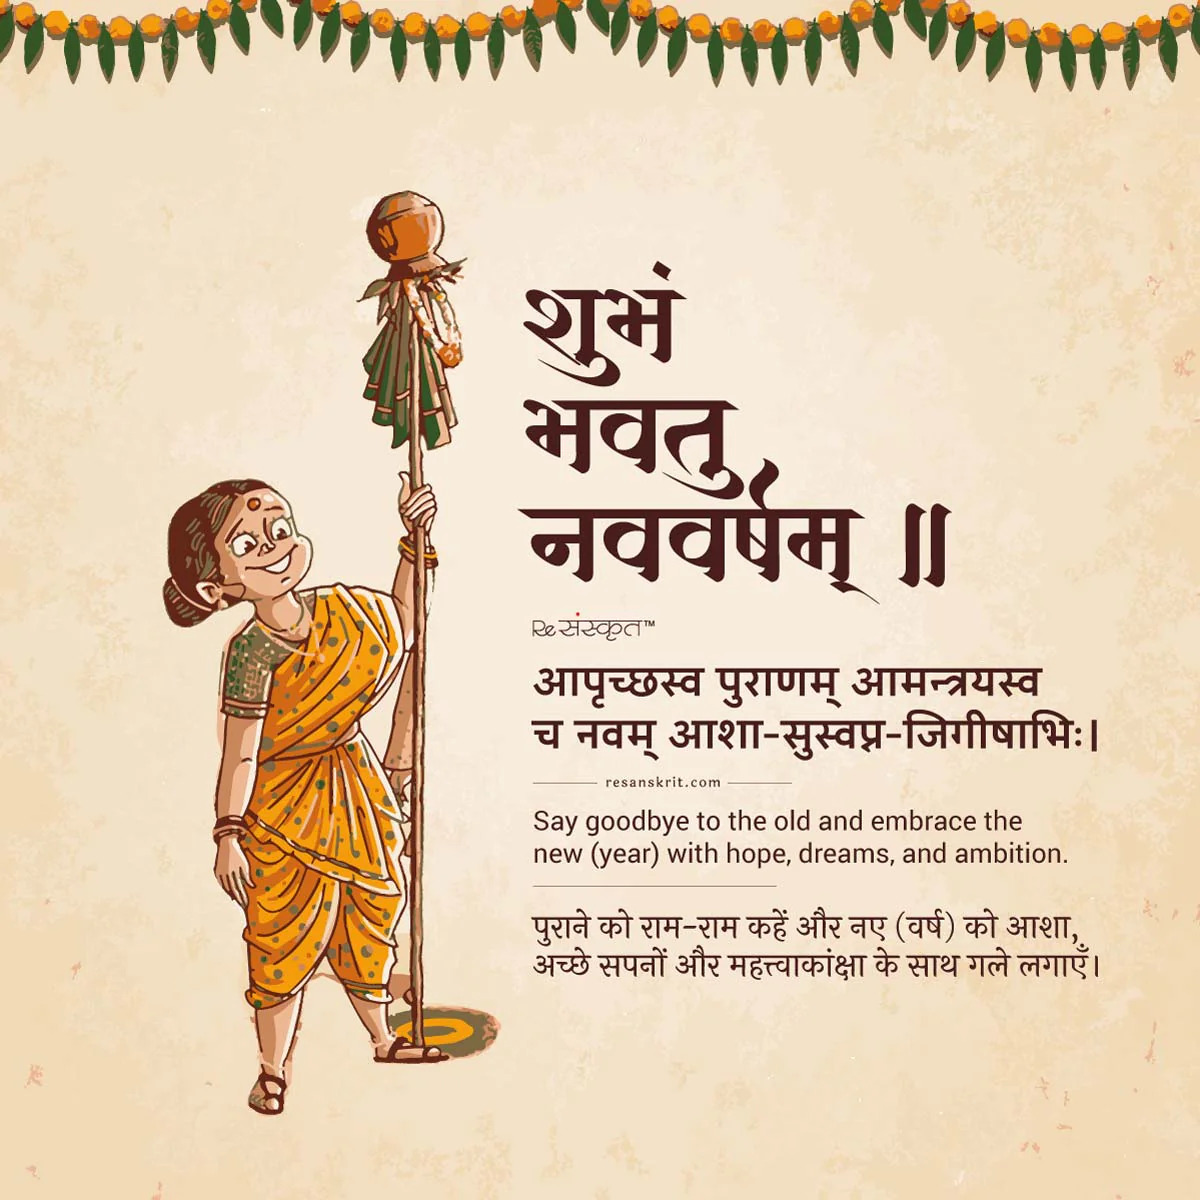 Sanskrit New Year's image